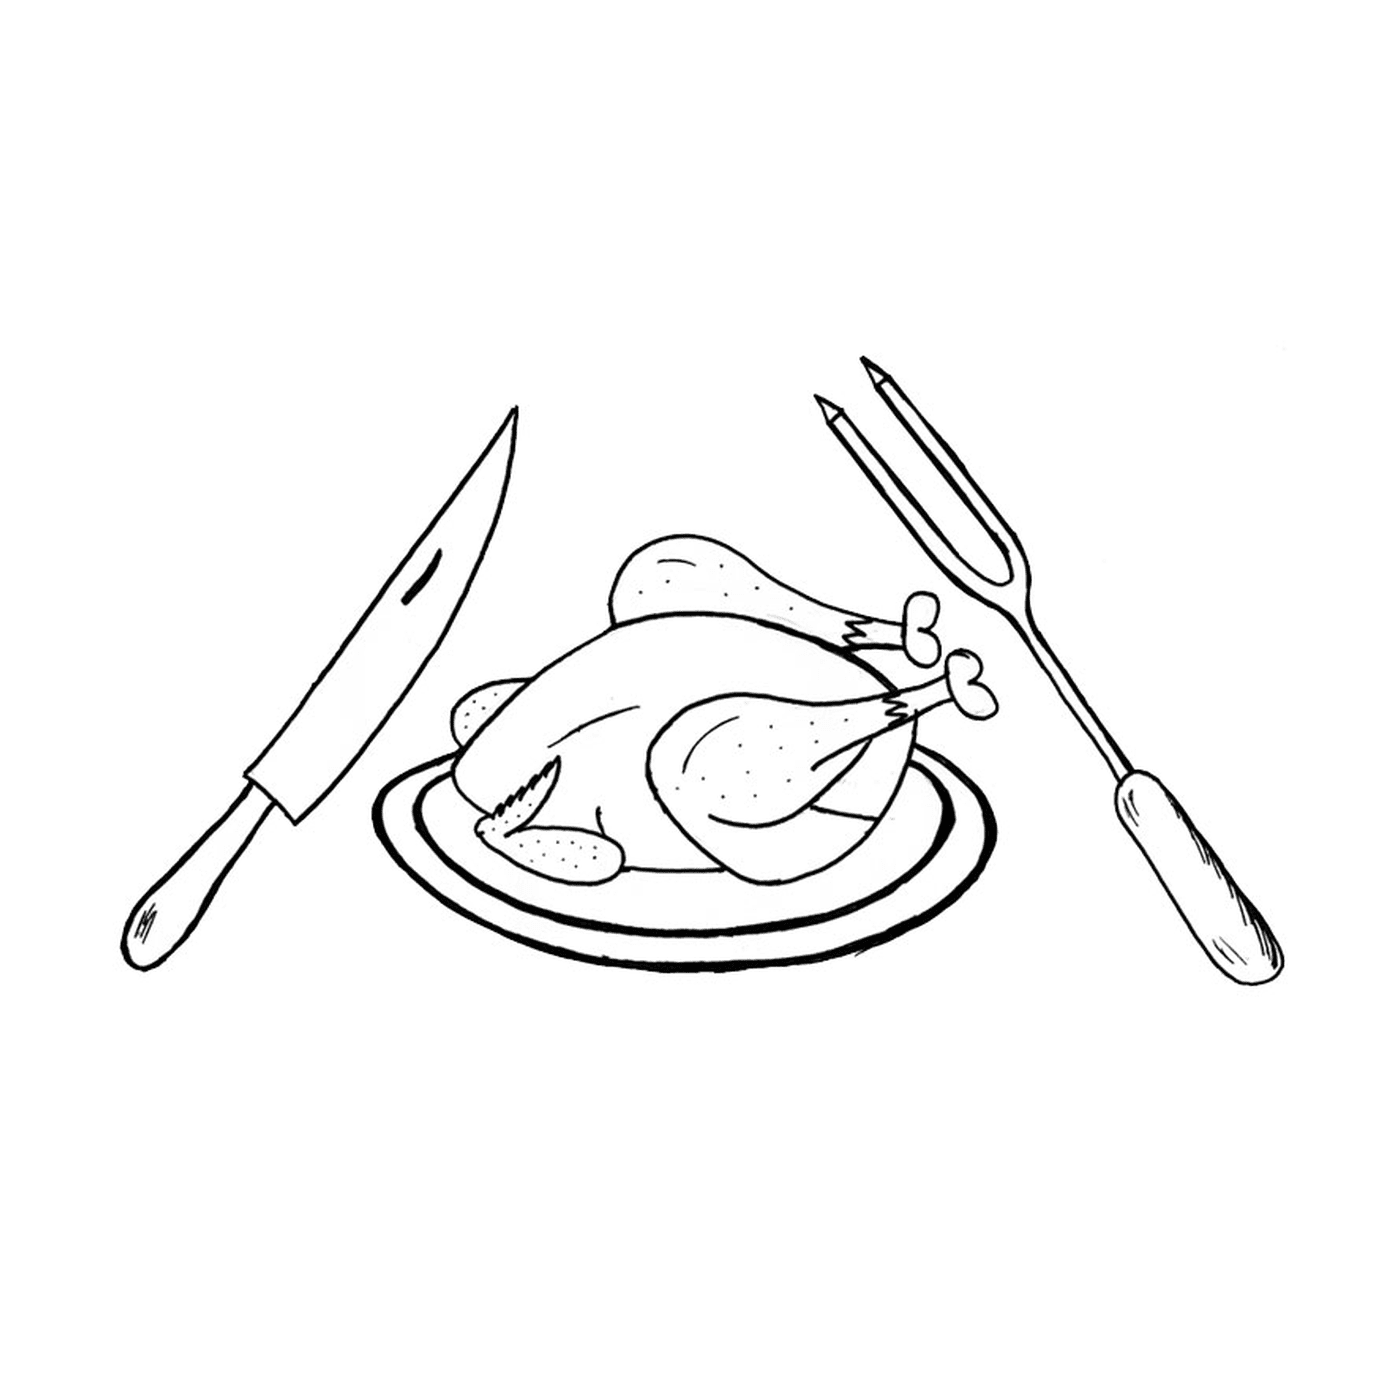  Ein Huhn auf einem Teller mit einem Messer, einer Gabel und einer Gabel 